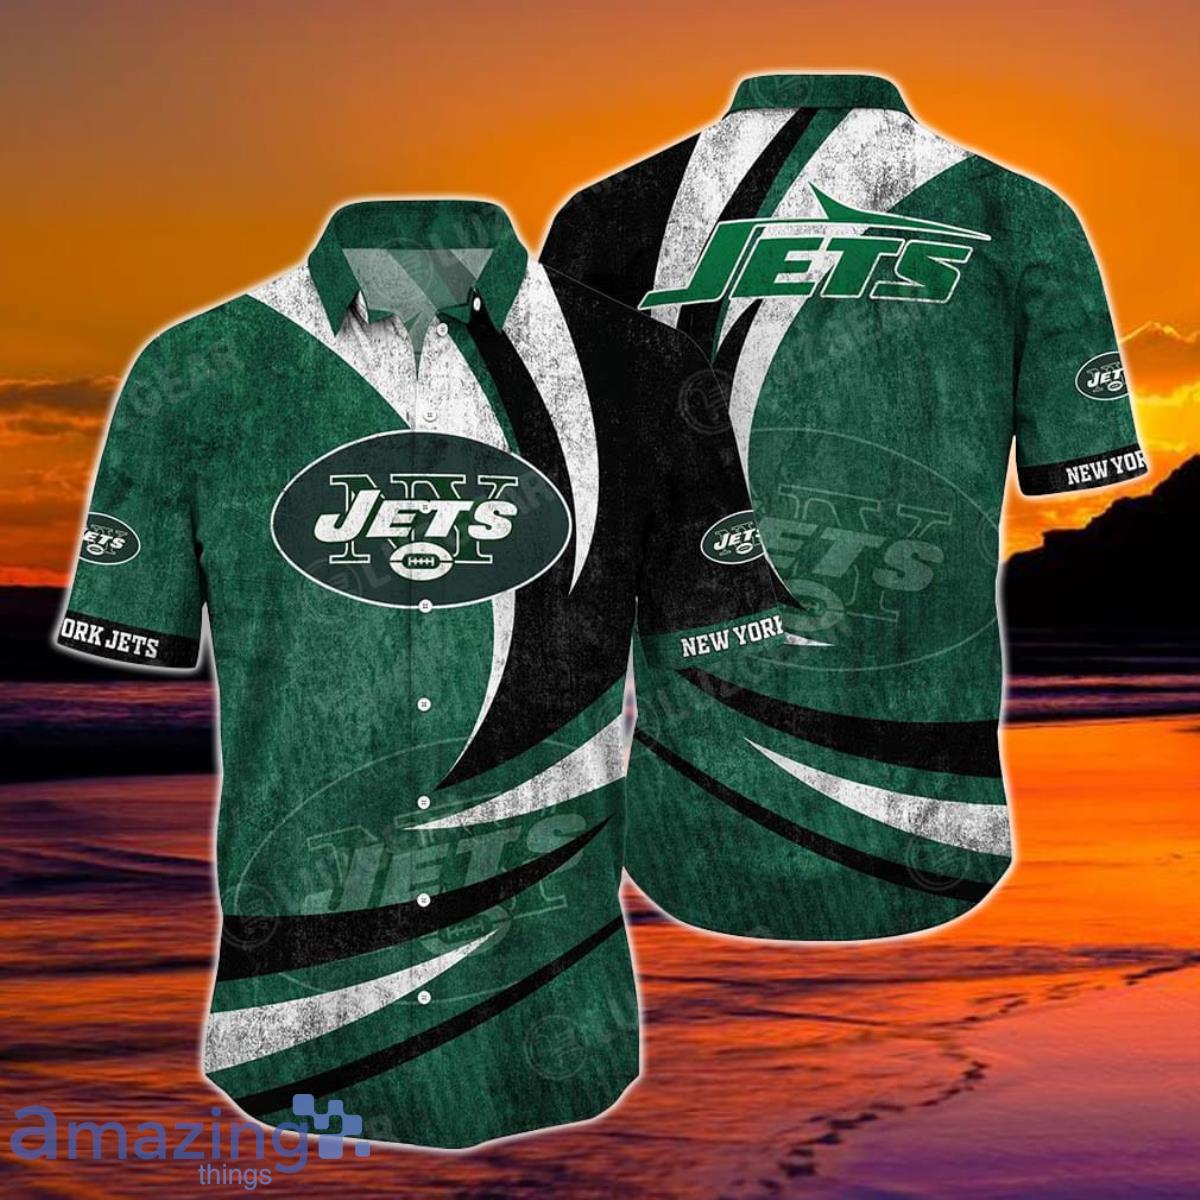 New York Jets Merchandise, Jets Apparel, Jerseys & Gear